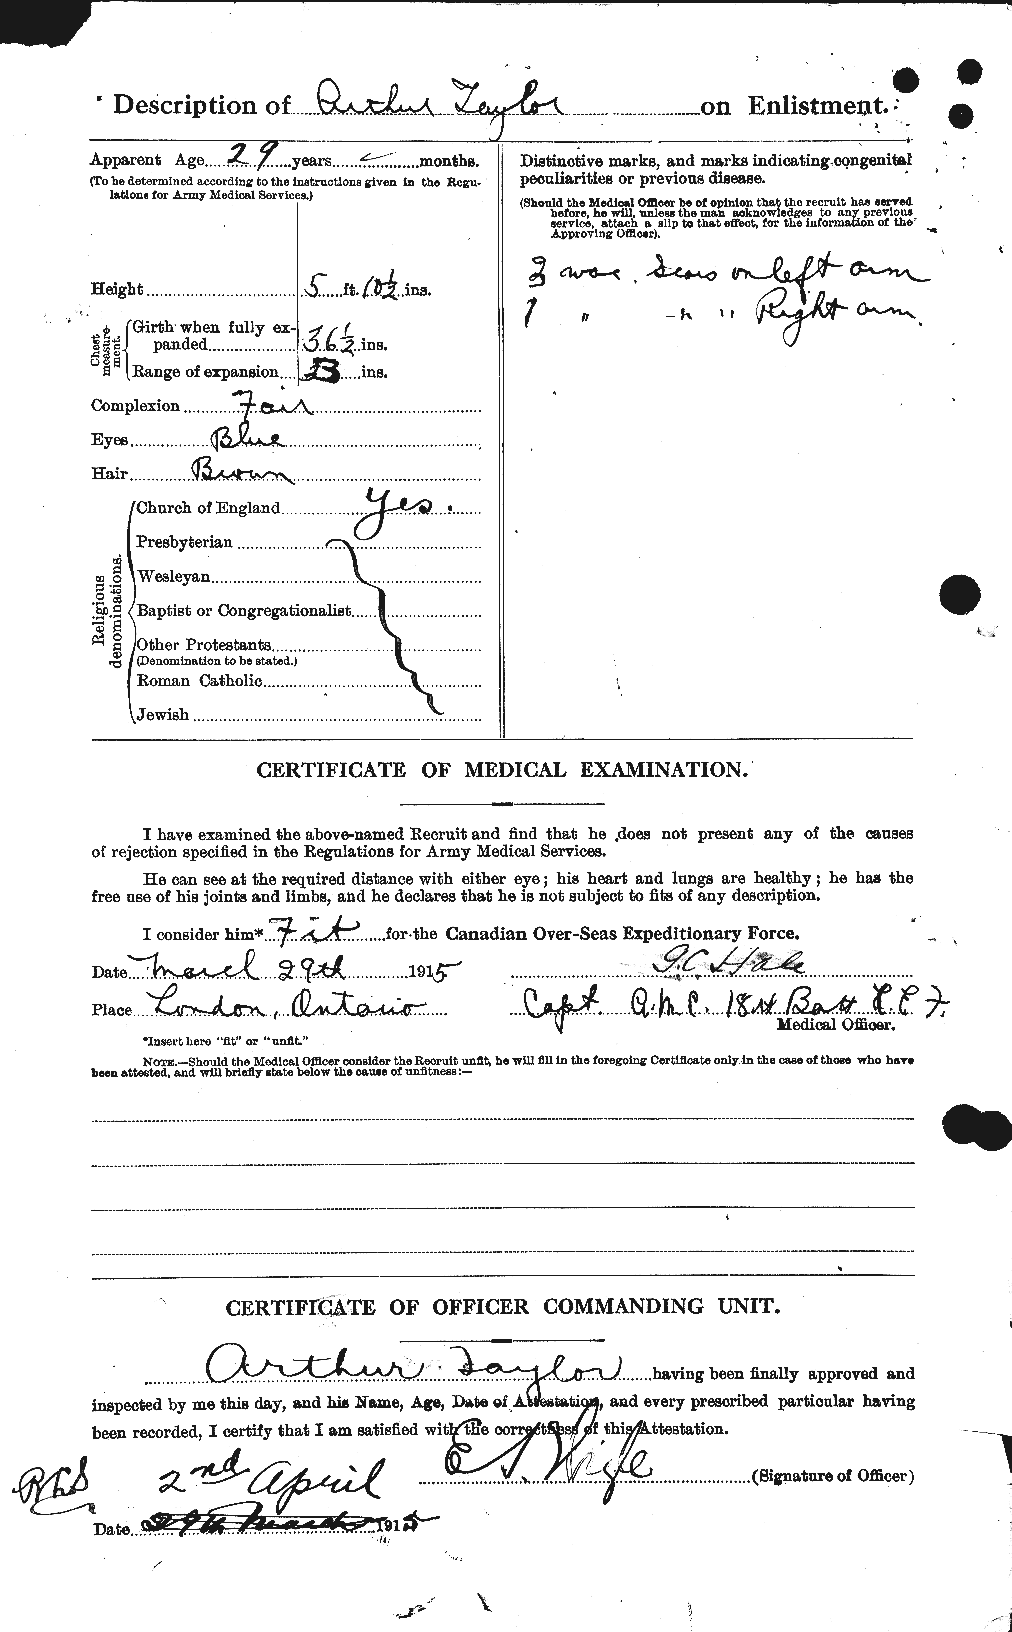 Dossiers du Personnel de la Première Guerre mondiale - CEC 626709b